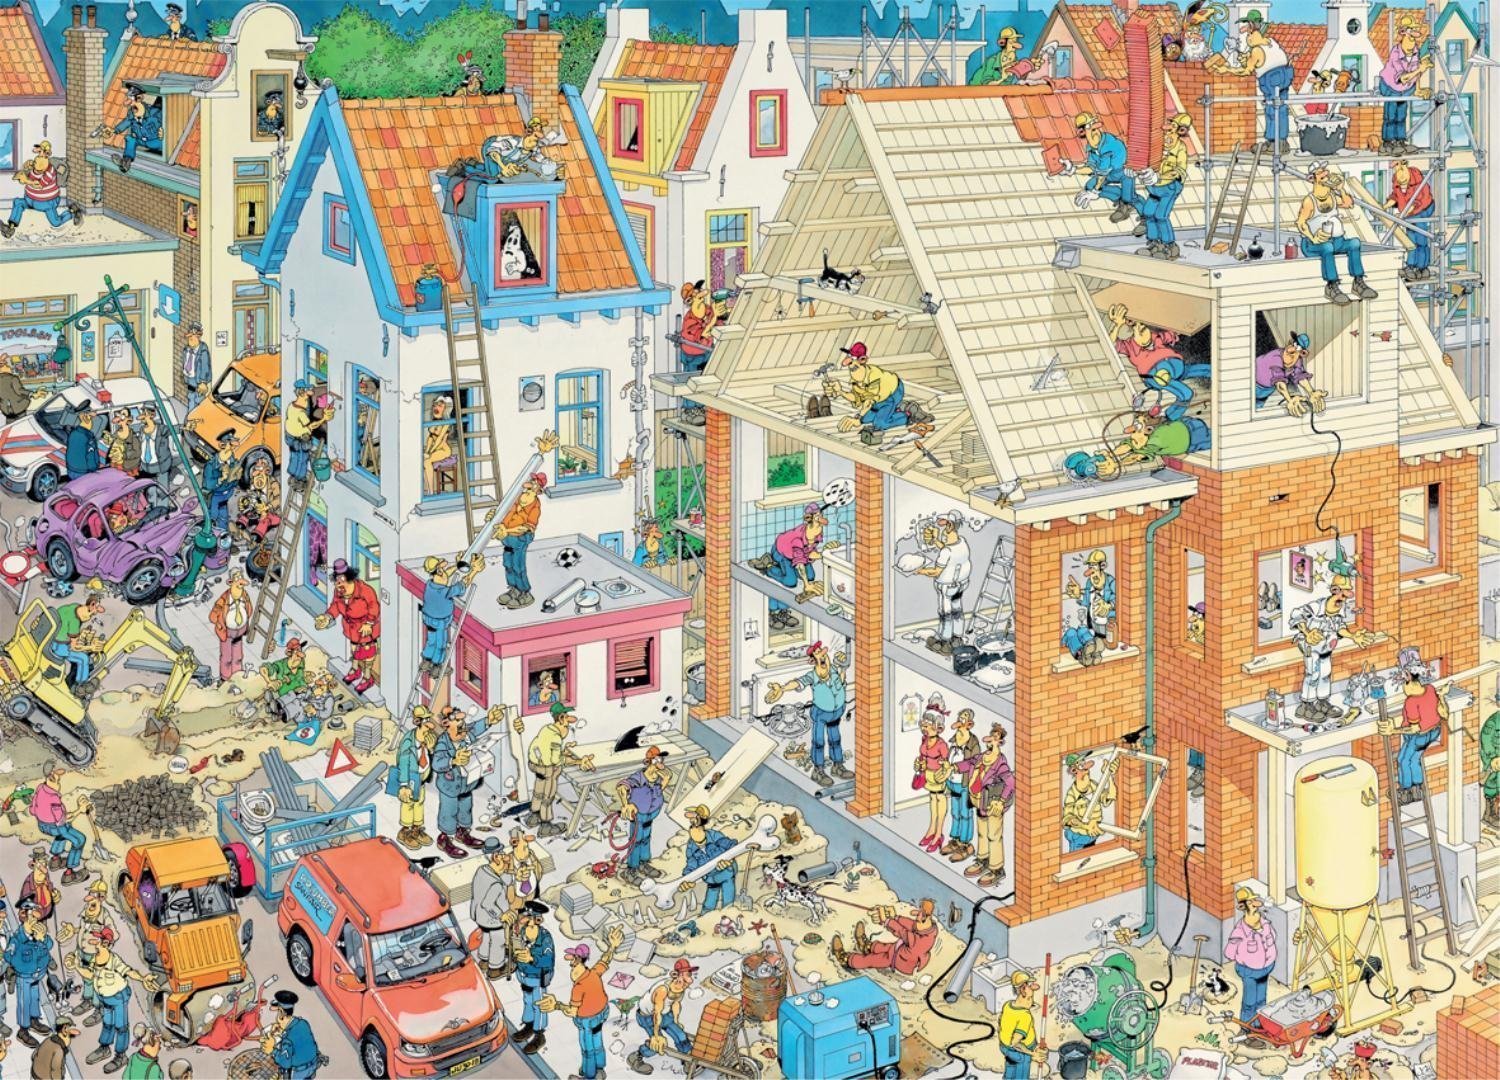 Bij wet Literaire kunsten Geboorte geven Buy Jan van Haasteren - 1500 pcs. Puzzle - The Storm